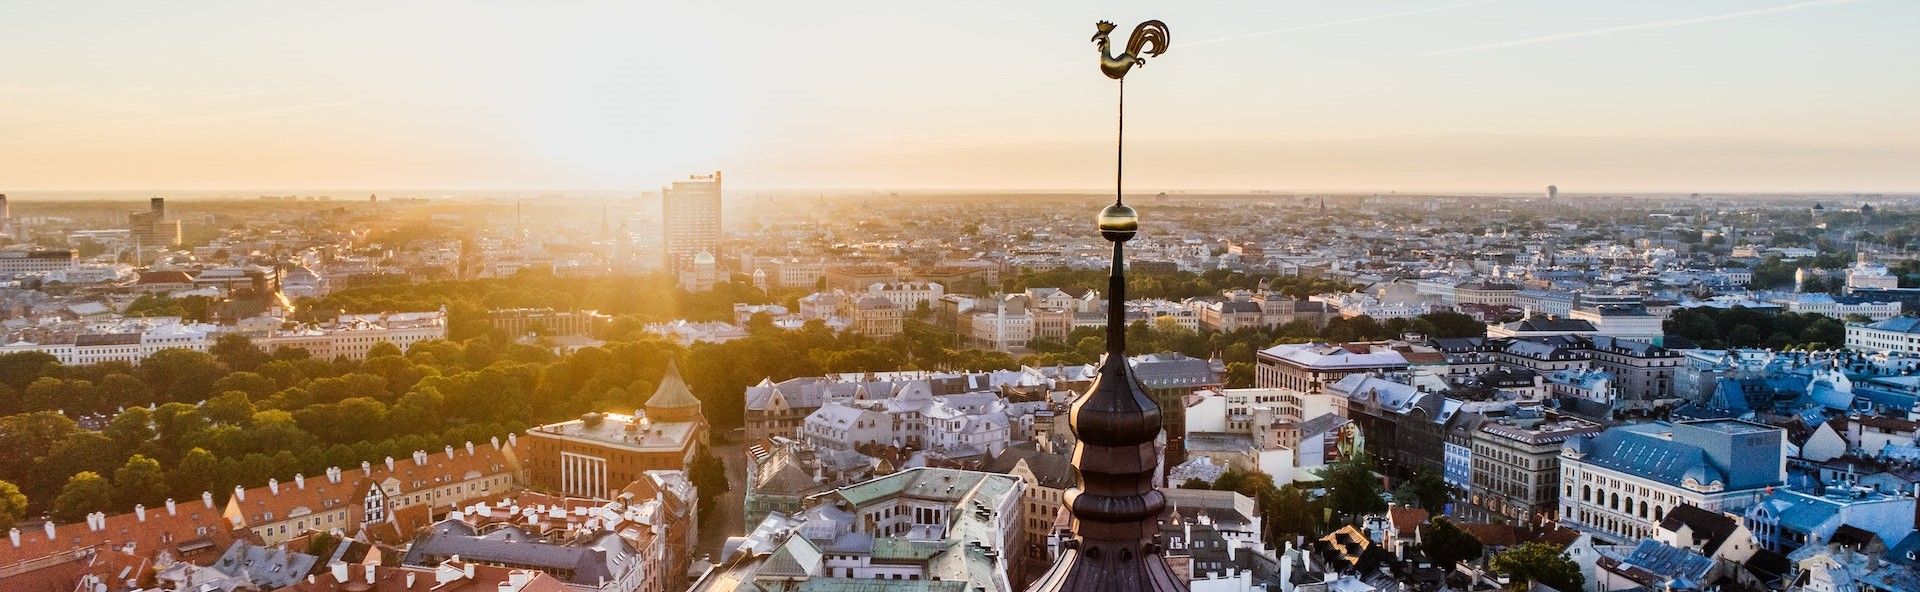 Riga, Capital of Latvia